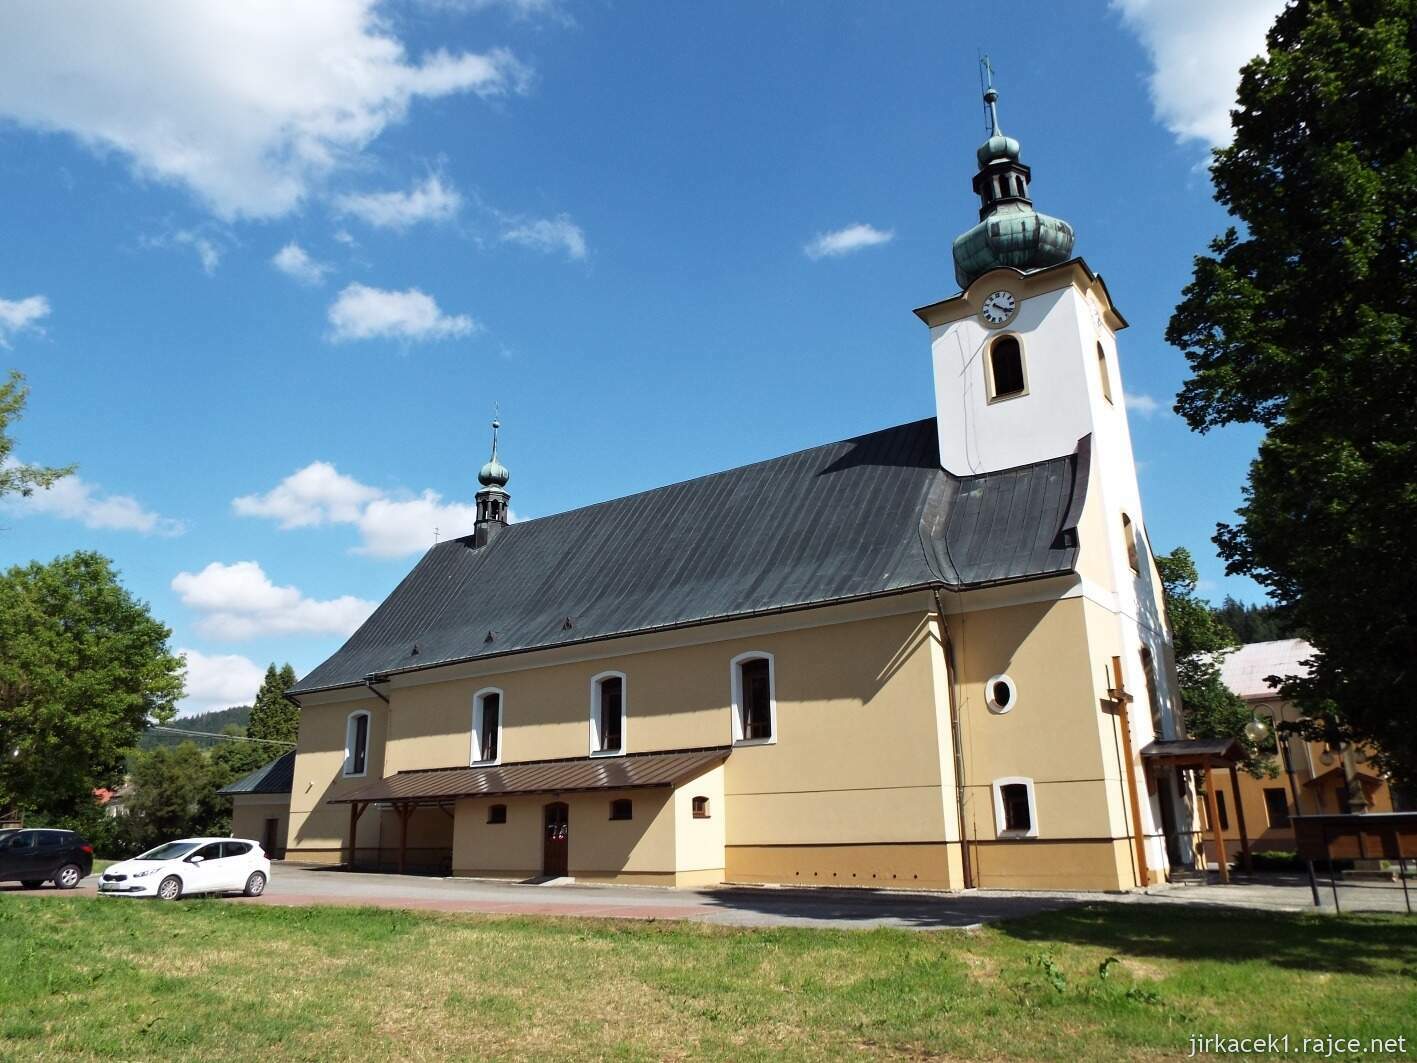 017 - Nový Hrozenkov - kostel sv. Jana Křtitele 01 - celkový pohled